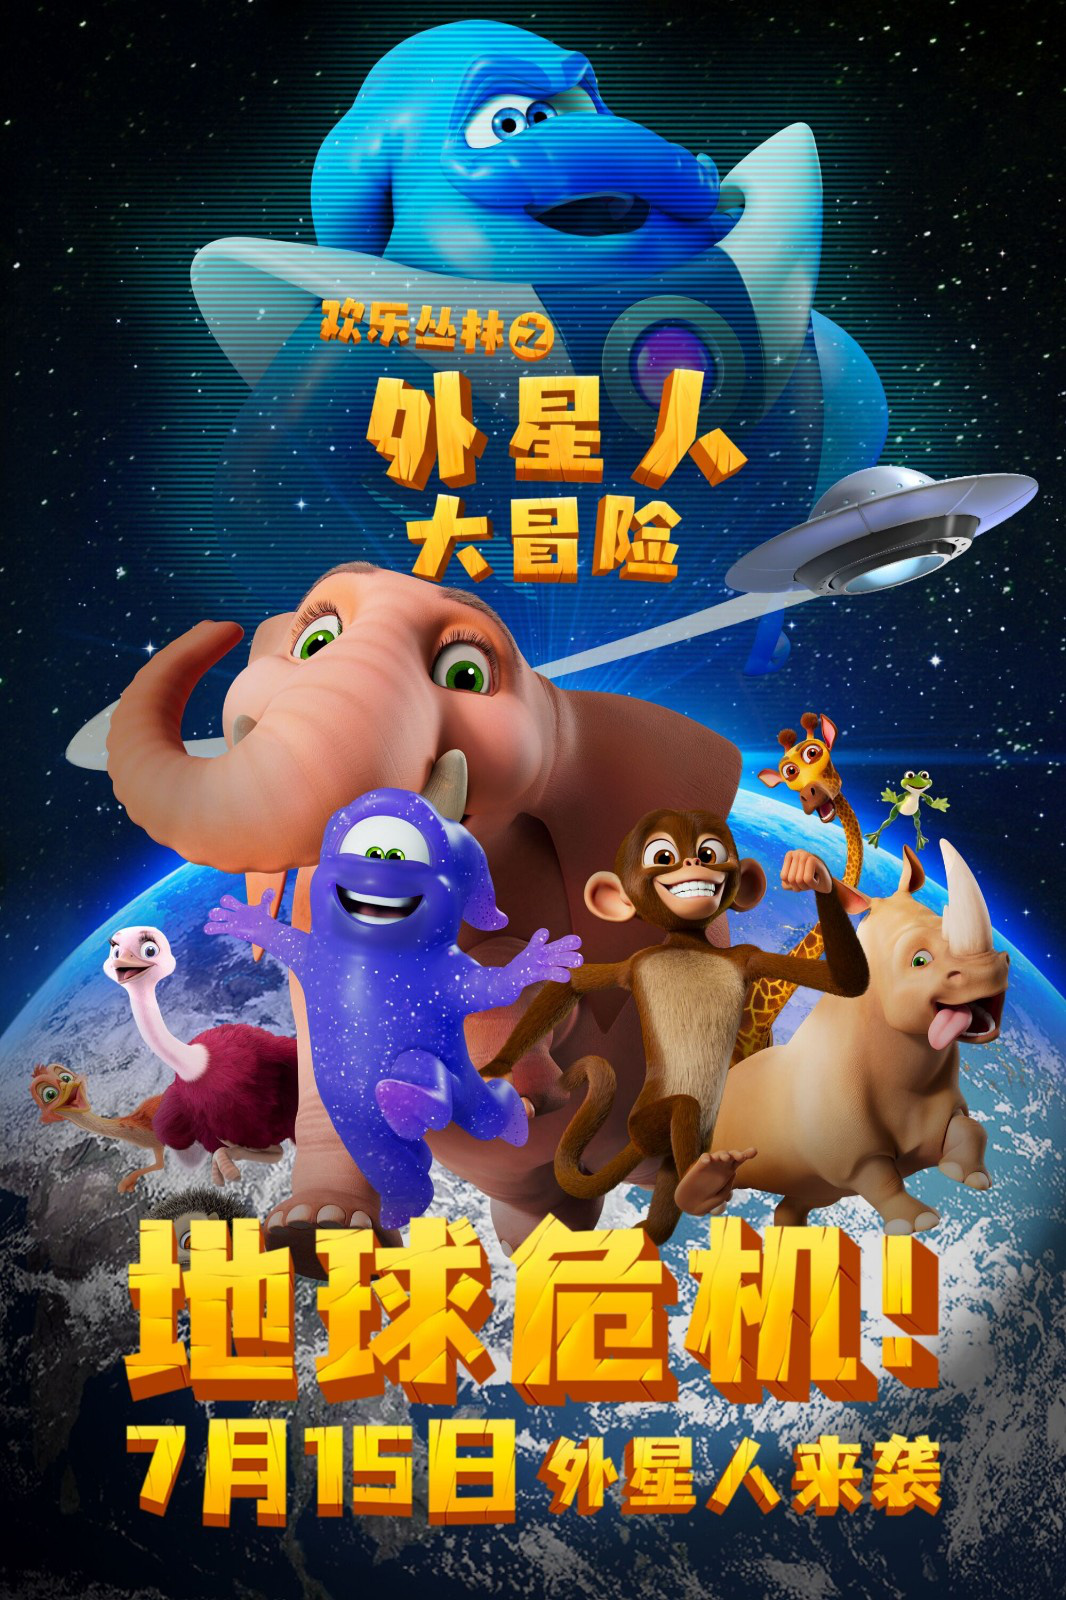 动画《欢乐丛林之外星人大冒险》发布预告、海报